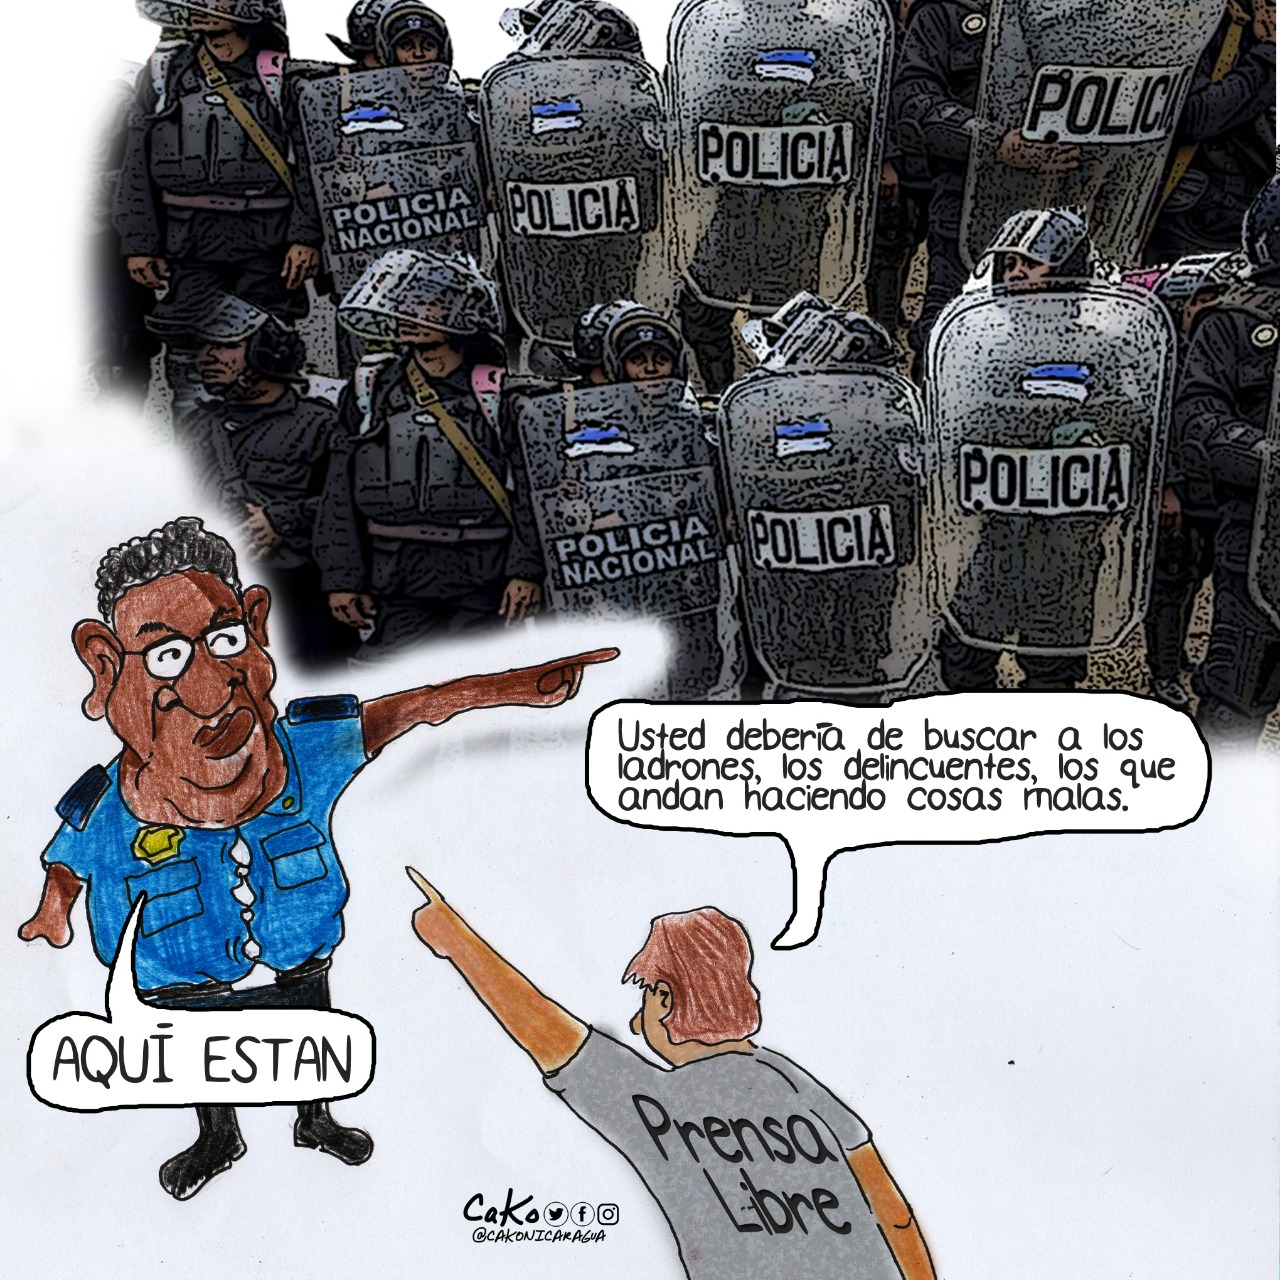 La Caricatura: "Tenemos derecho a informar"